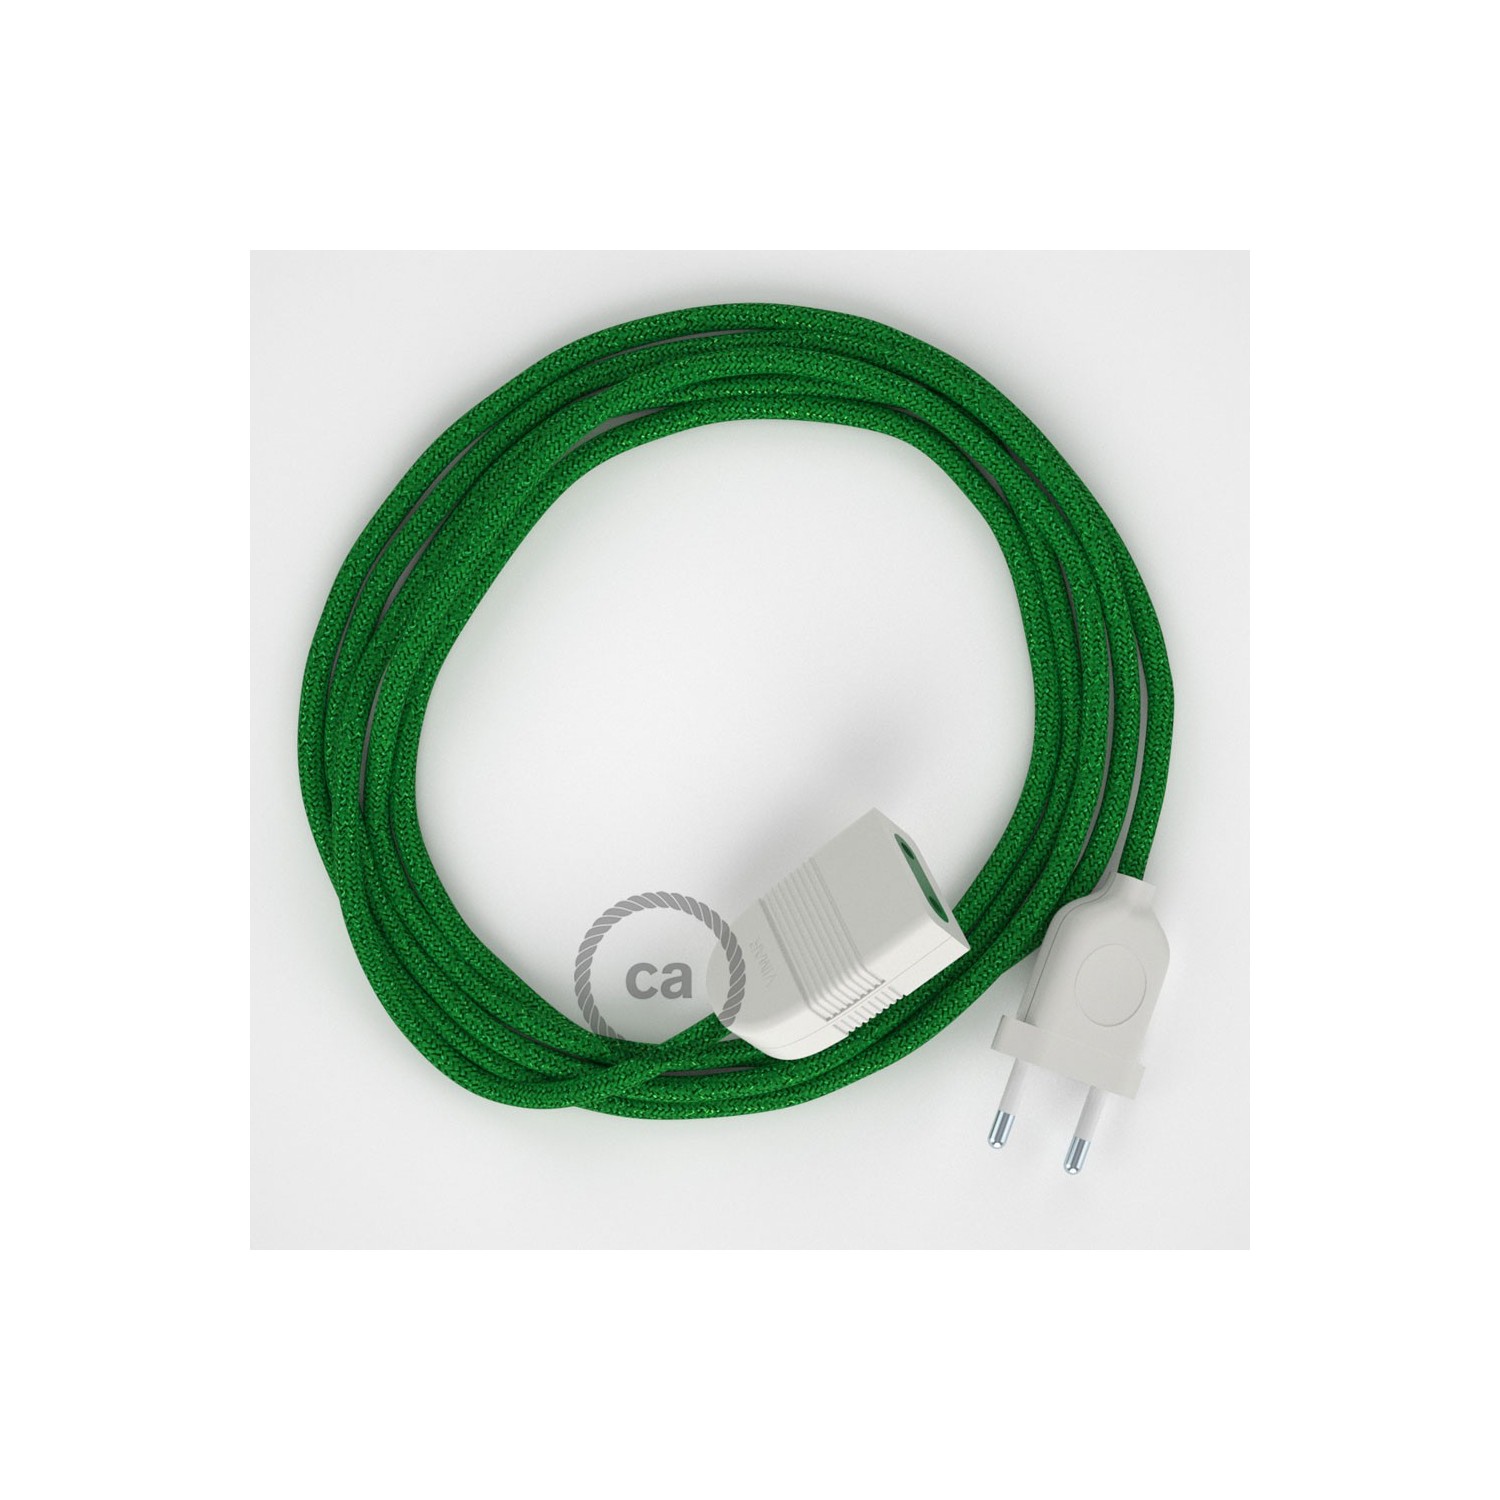 Verlengkabel 2P 10A met rond flexibel strijkijzersnoer RL06 van groen viscose